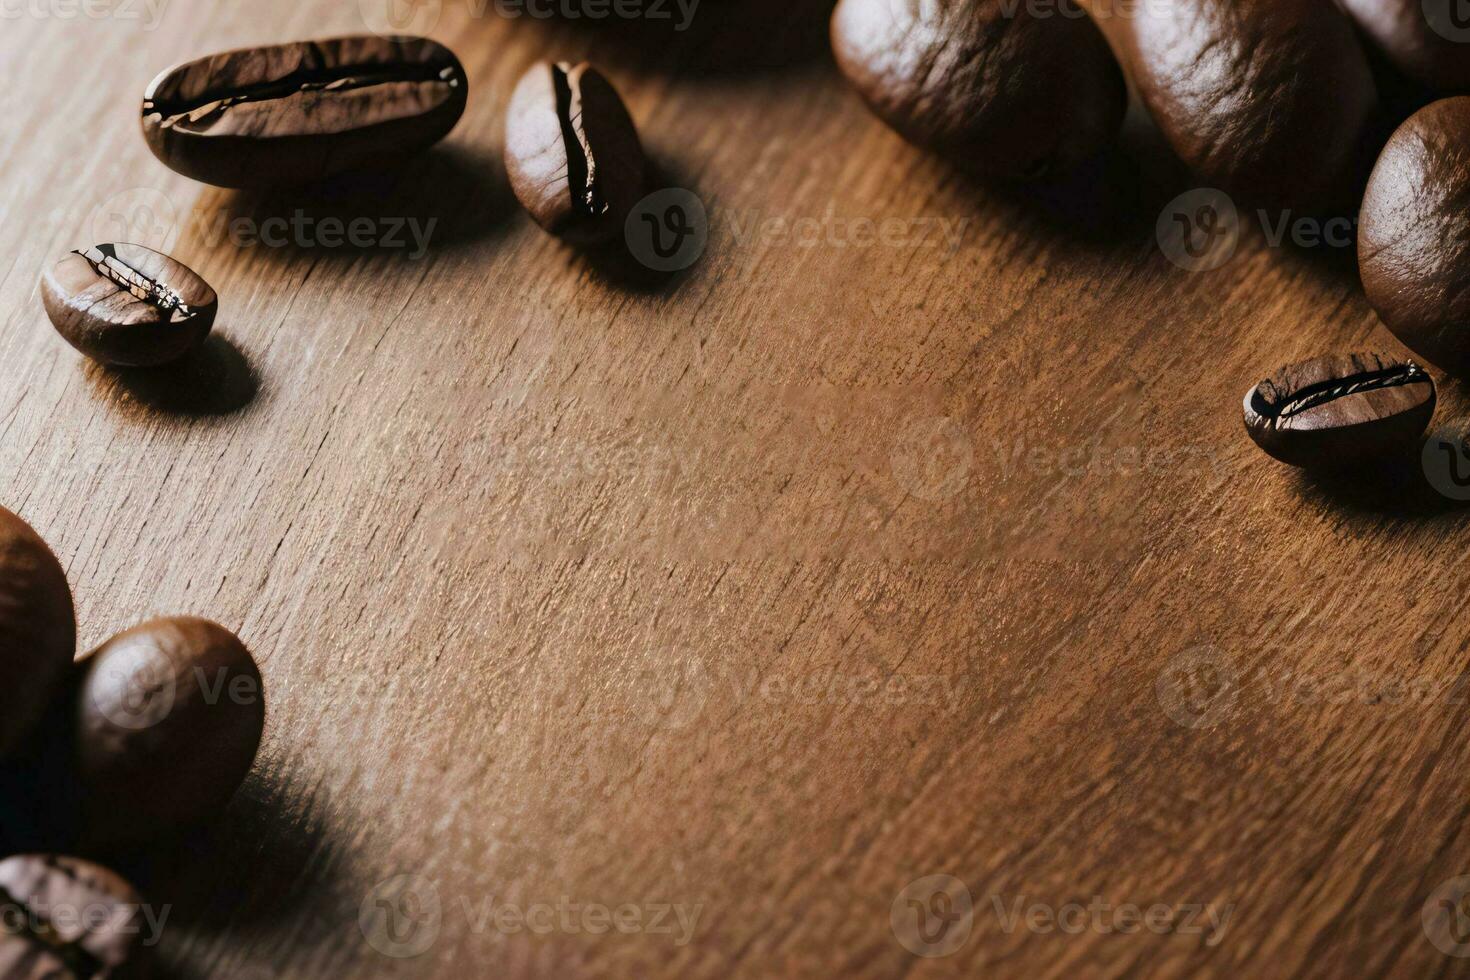 café feijões em a de madeira mesa bandeira modelo foto